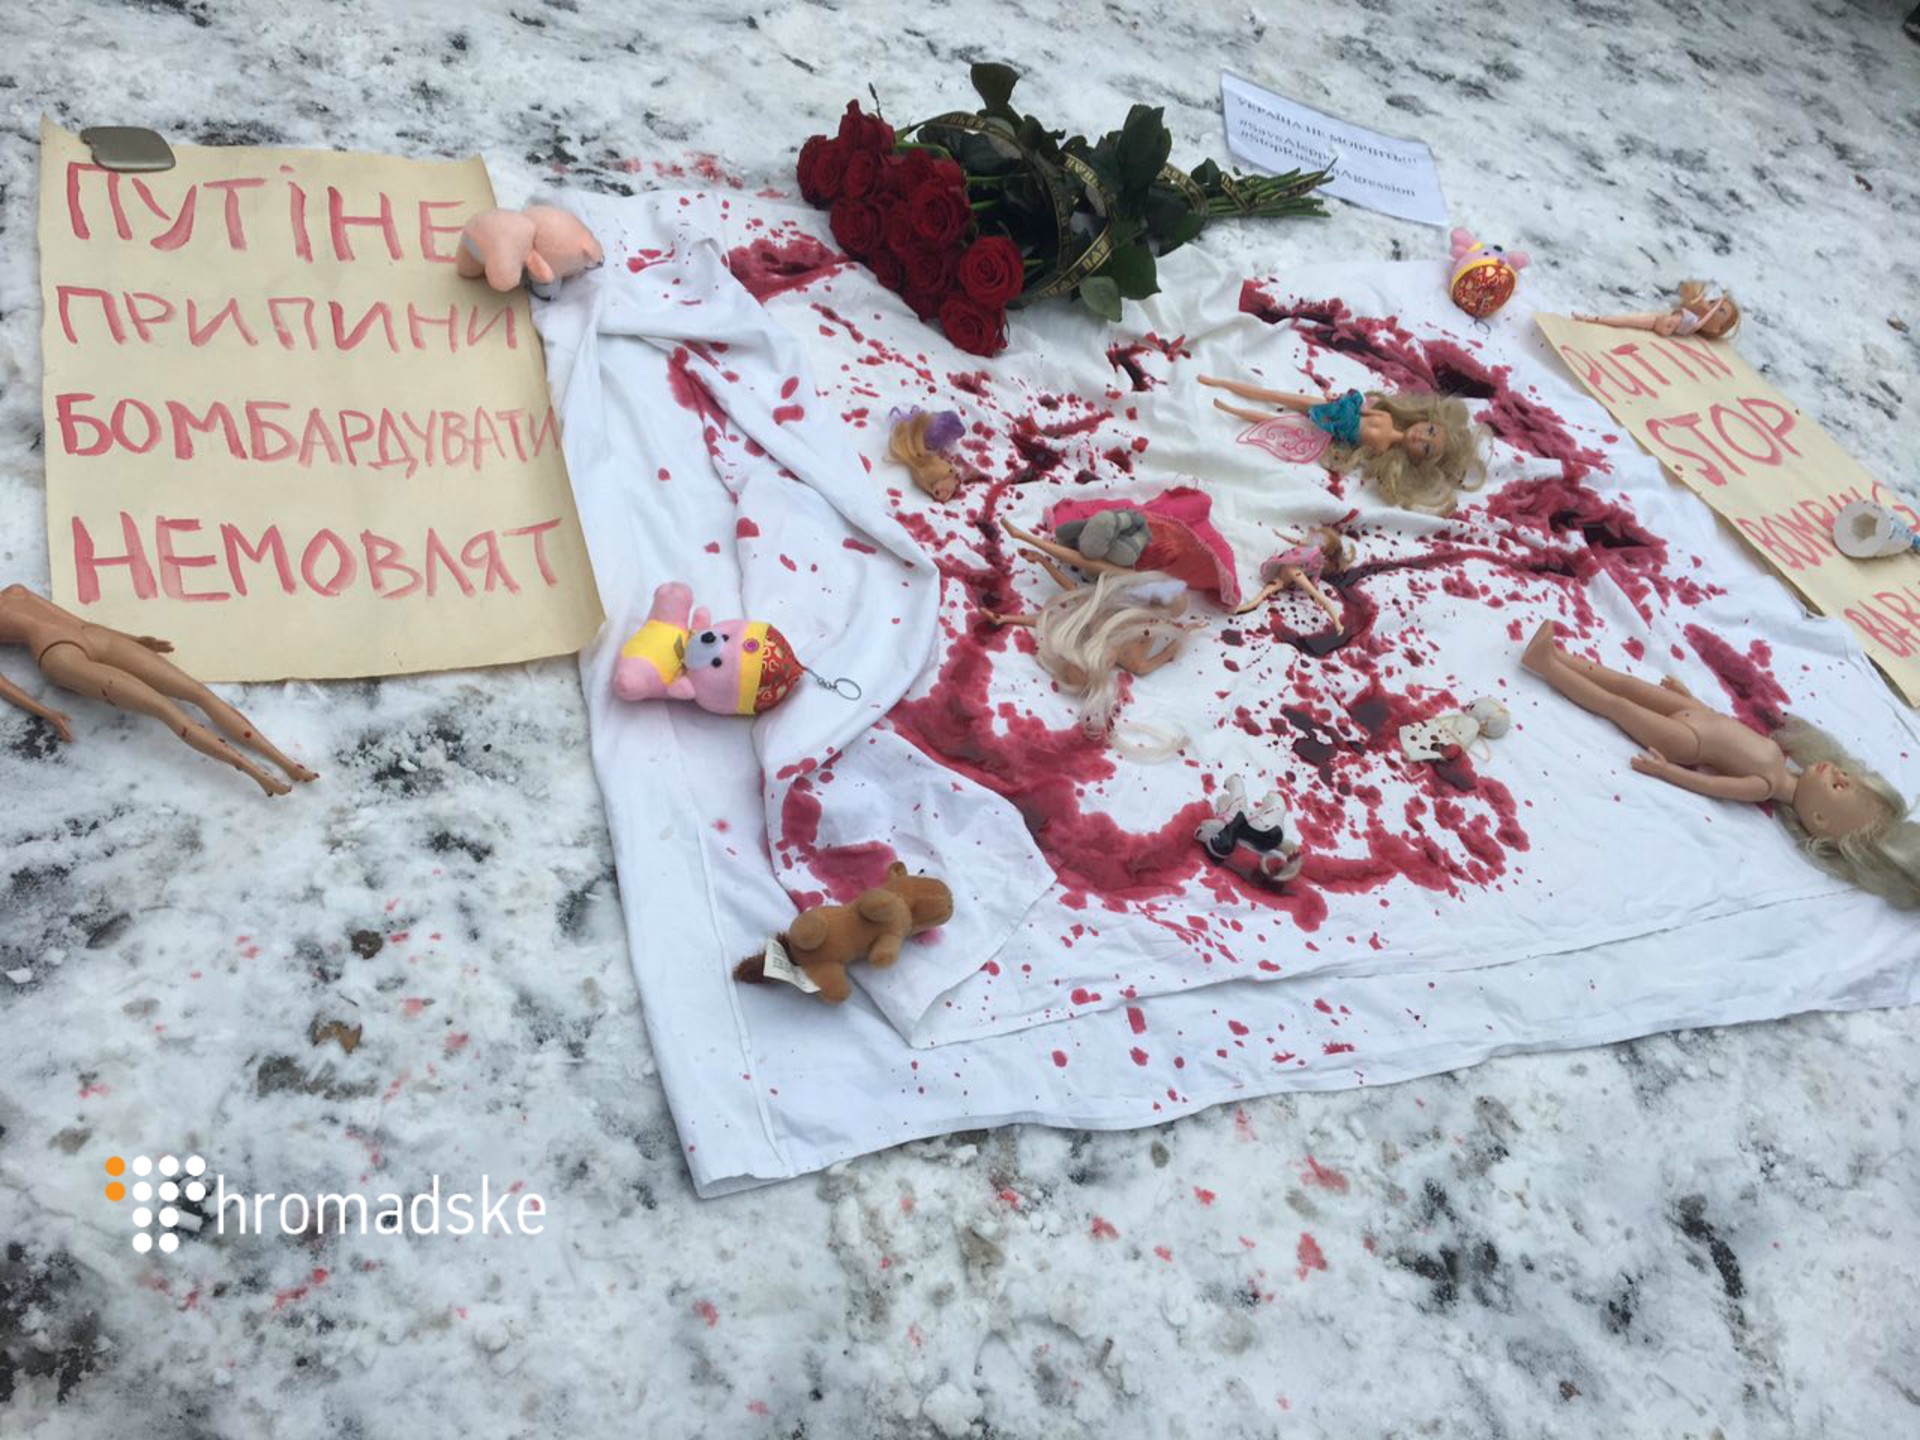 Через бомбардування Сирії під посольство Росії в Києві принесли закривавлені ляльки - фото 2